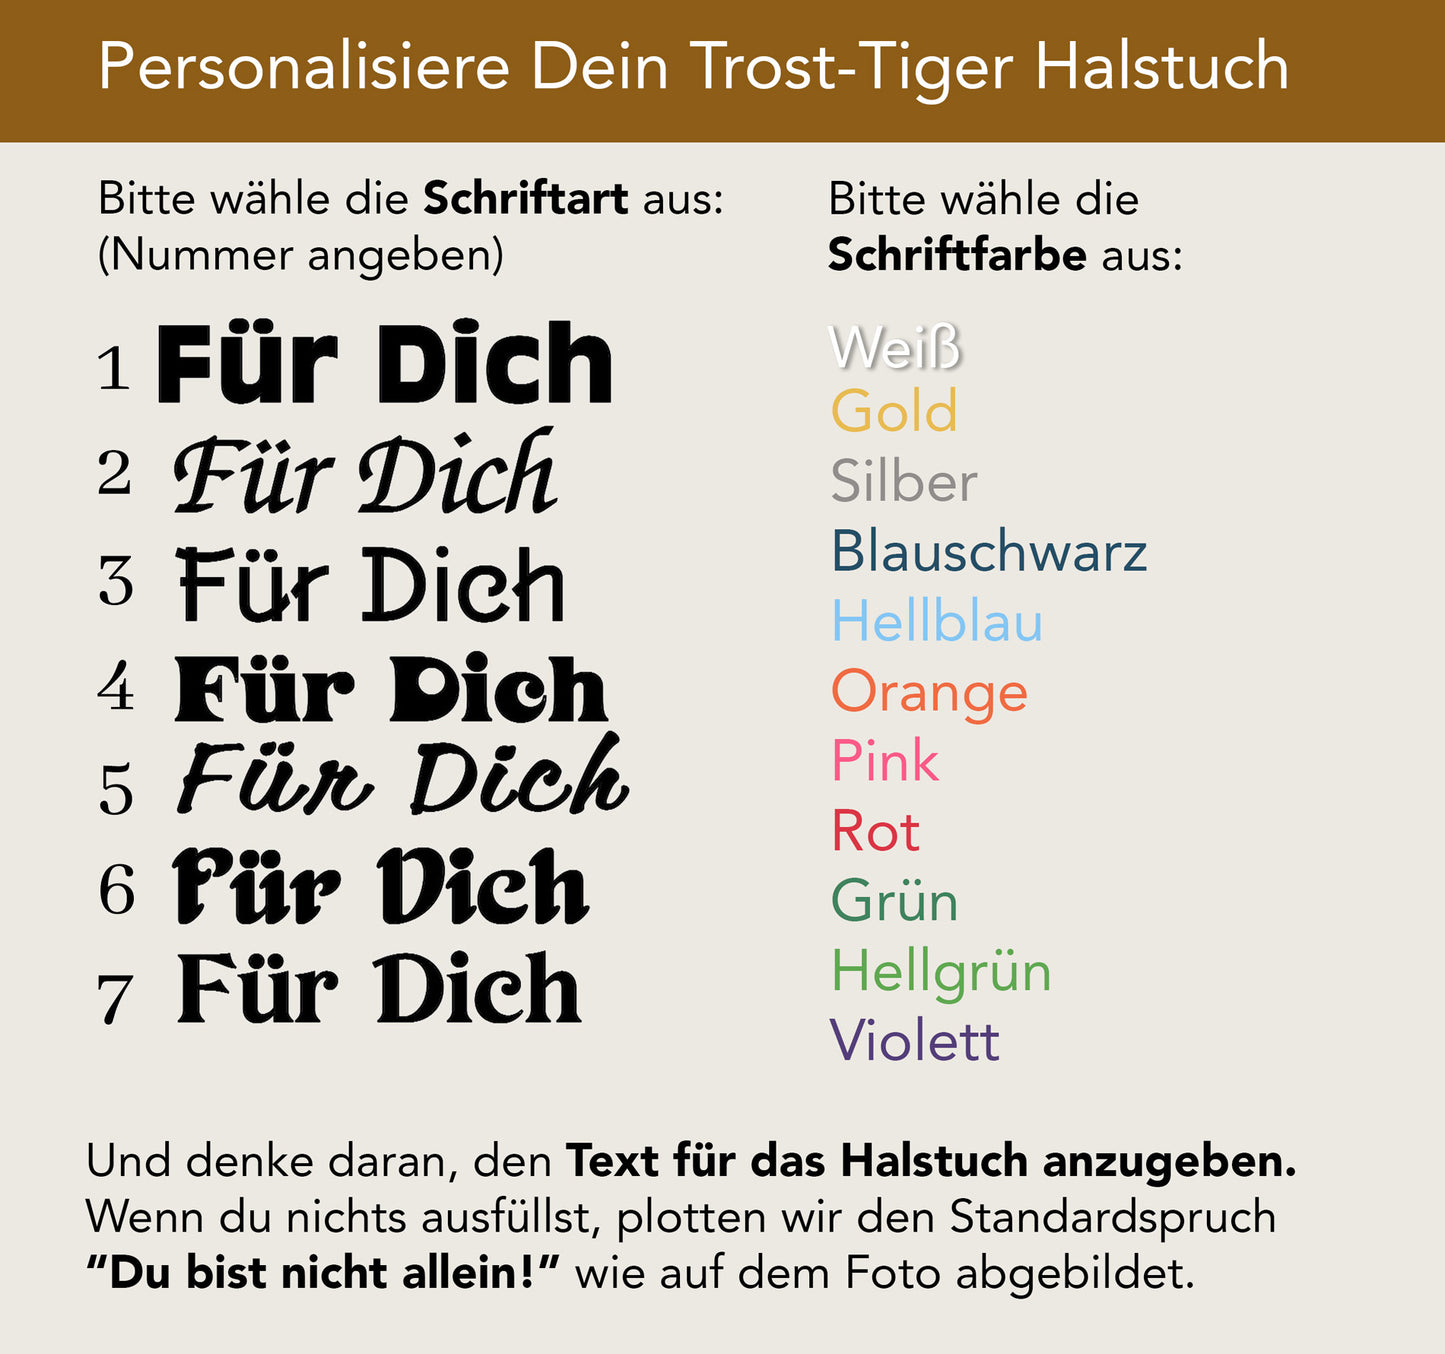 Kleiner Trost-Tiger "Trostina" mit personalisiertem Halstuch, 22 cm